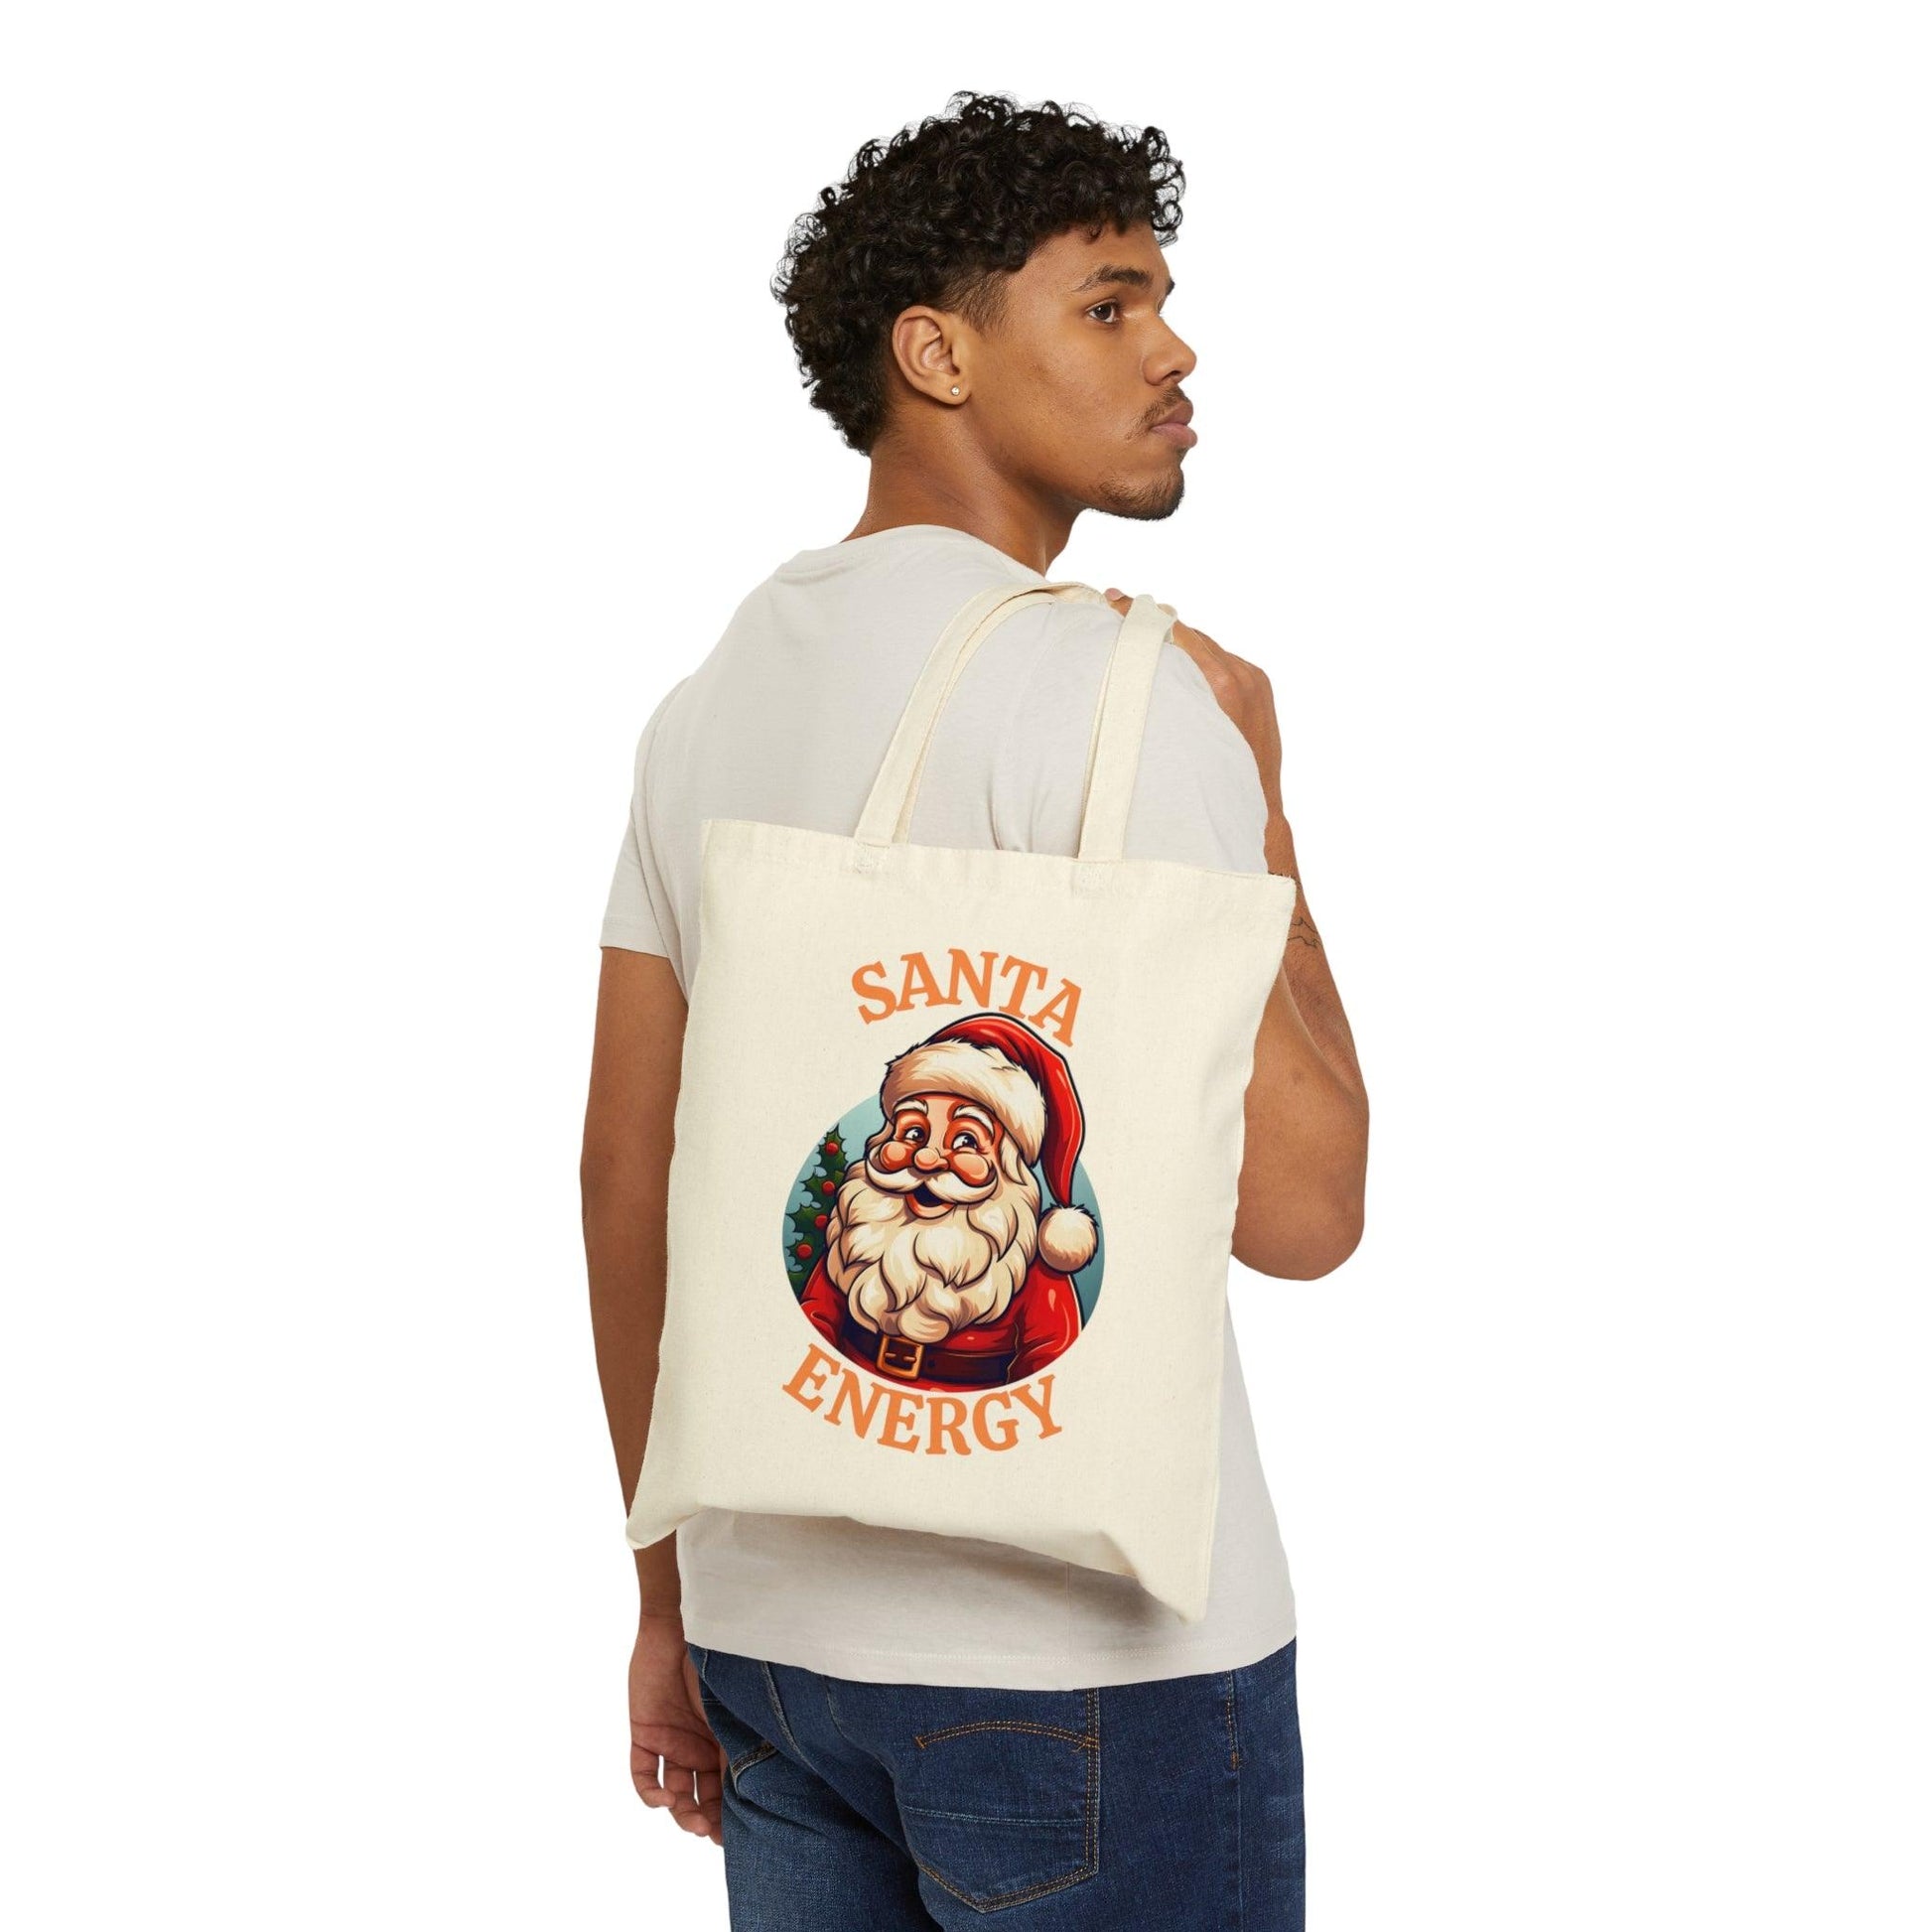 Santa Energy Tote Bag Christmas Bag Christmas Tote Bag Santa Claus Totes Bag Canvas Tote Bag Shopping Bag Gift For Women Totes Birthday Gift Bag - Giftsmojo